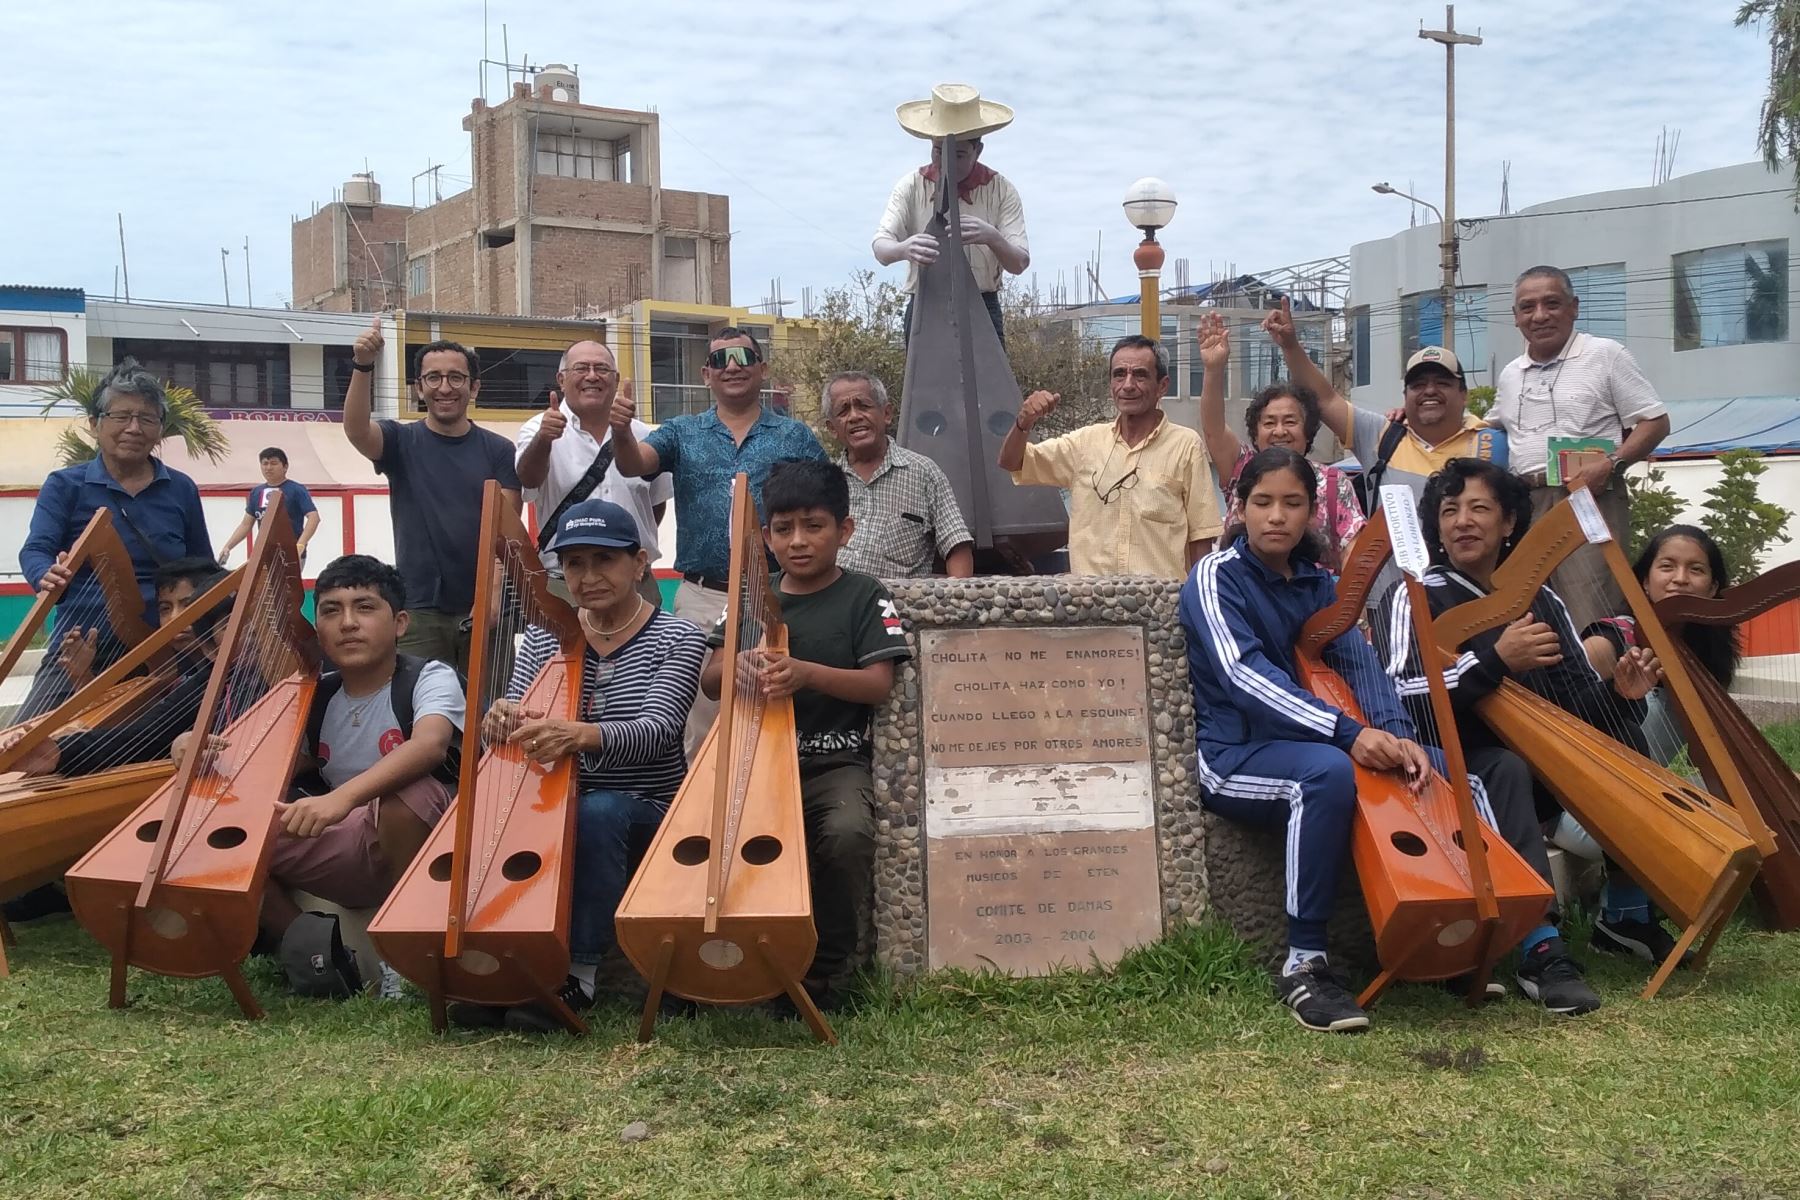 Las clases de arpa empezaron en Ciudad Eten el 3 de diciembre y se espera ofrecer un espectáculo en julio próximo. Foto: Cortesía Silvia Depaz